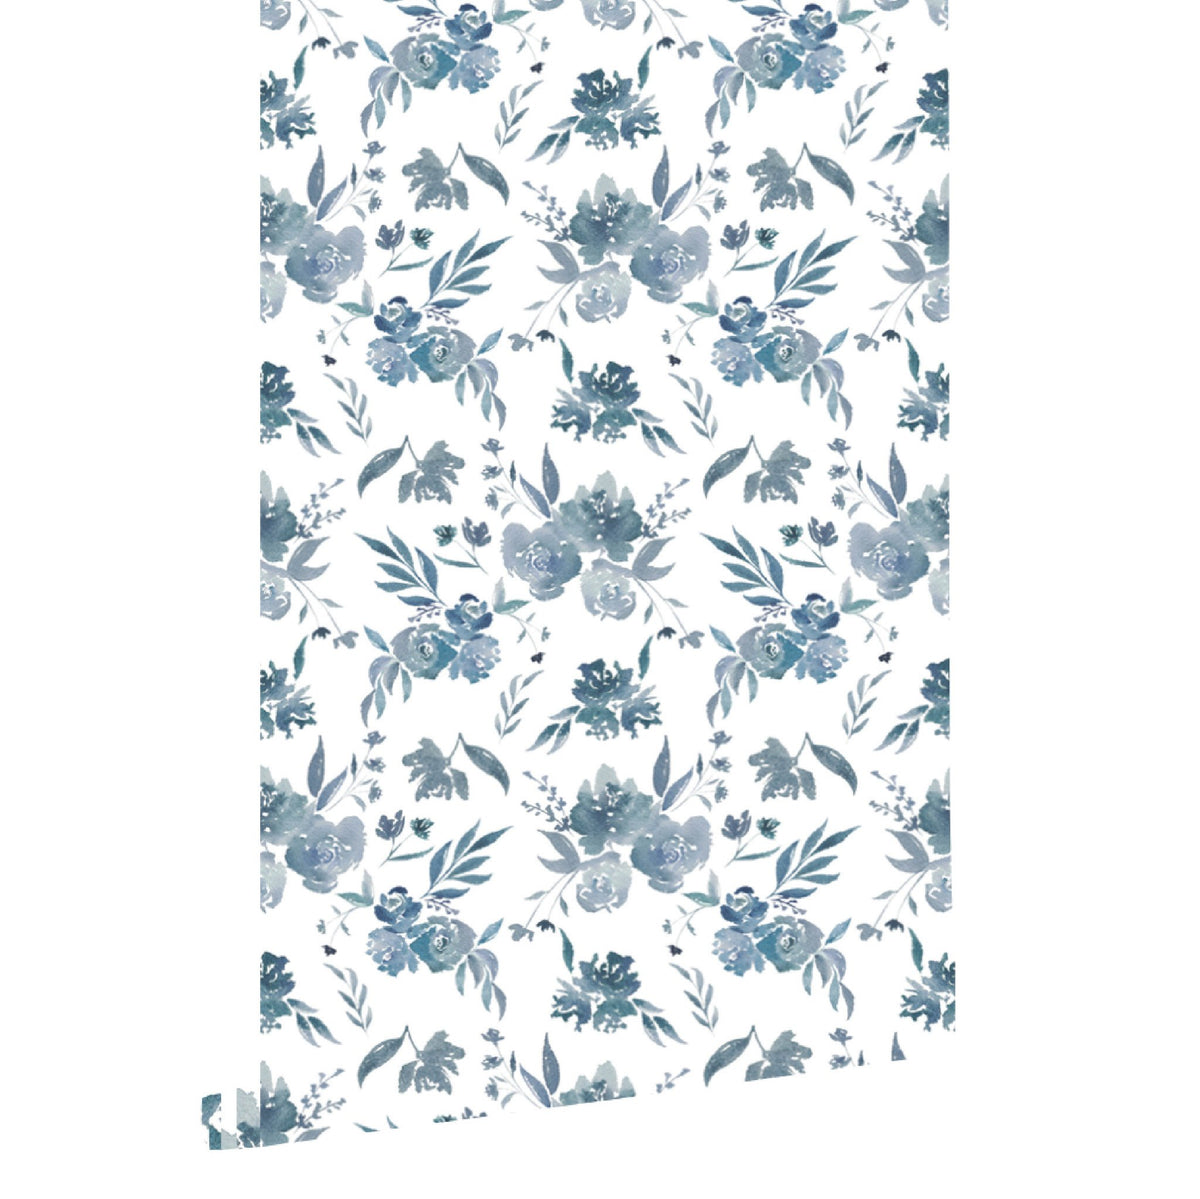 Indigo Floral Wallpaper